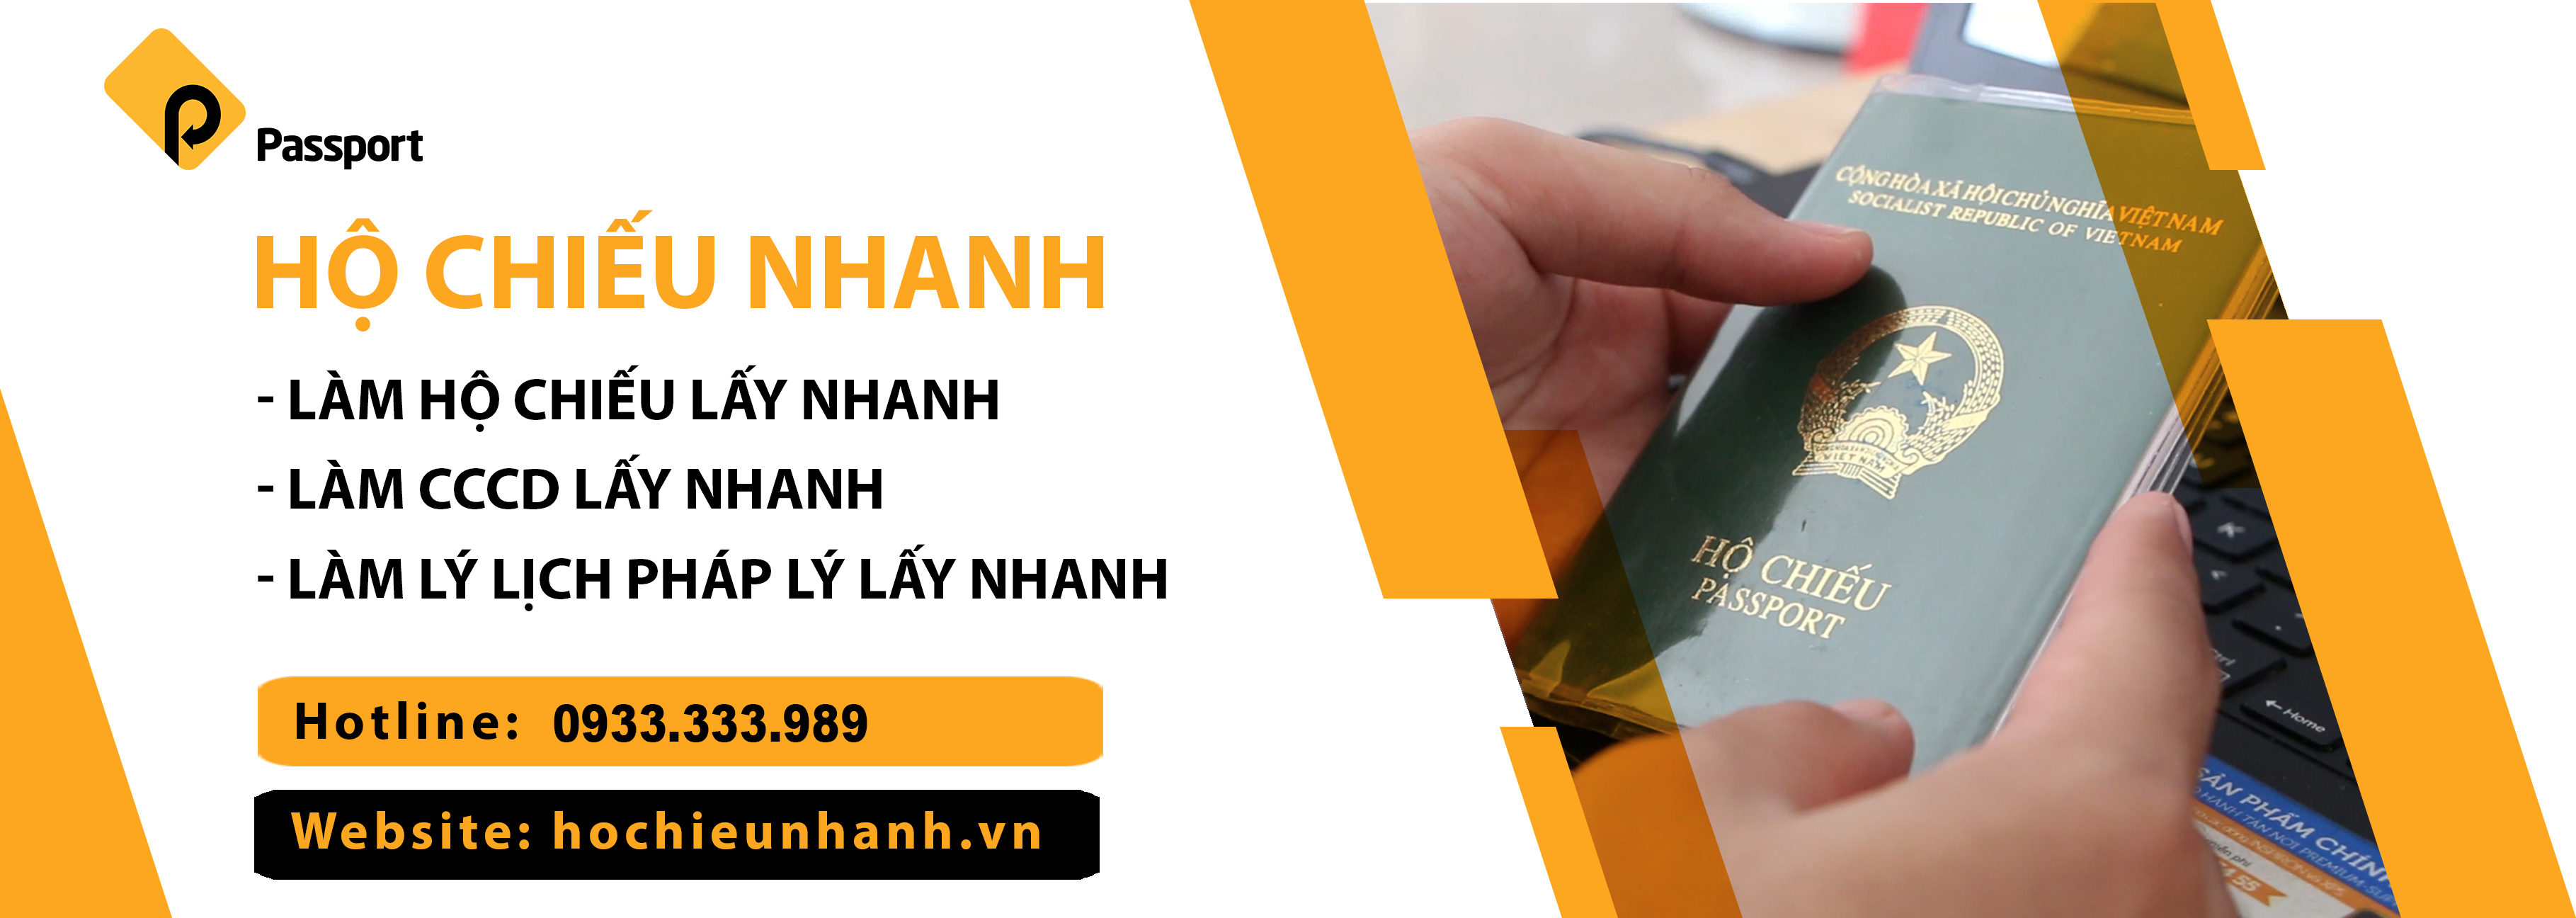 Hochieunhanh.vn: Cung Cấp Dịch Vụ Làm Hộ Chiếu Online Nhanh Chóng - Giá Rẻ - Không Cần Cọc